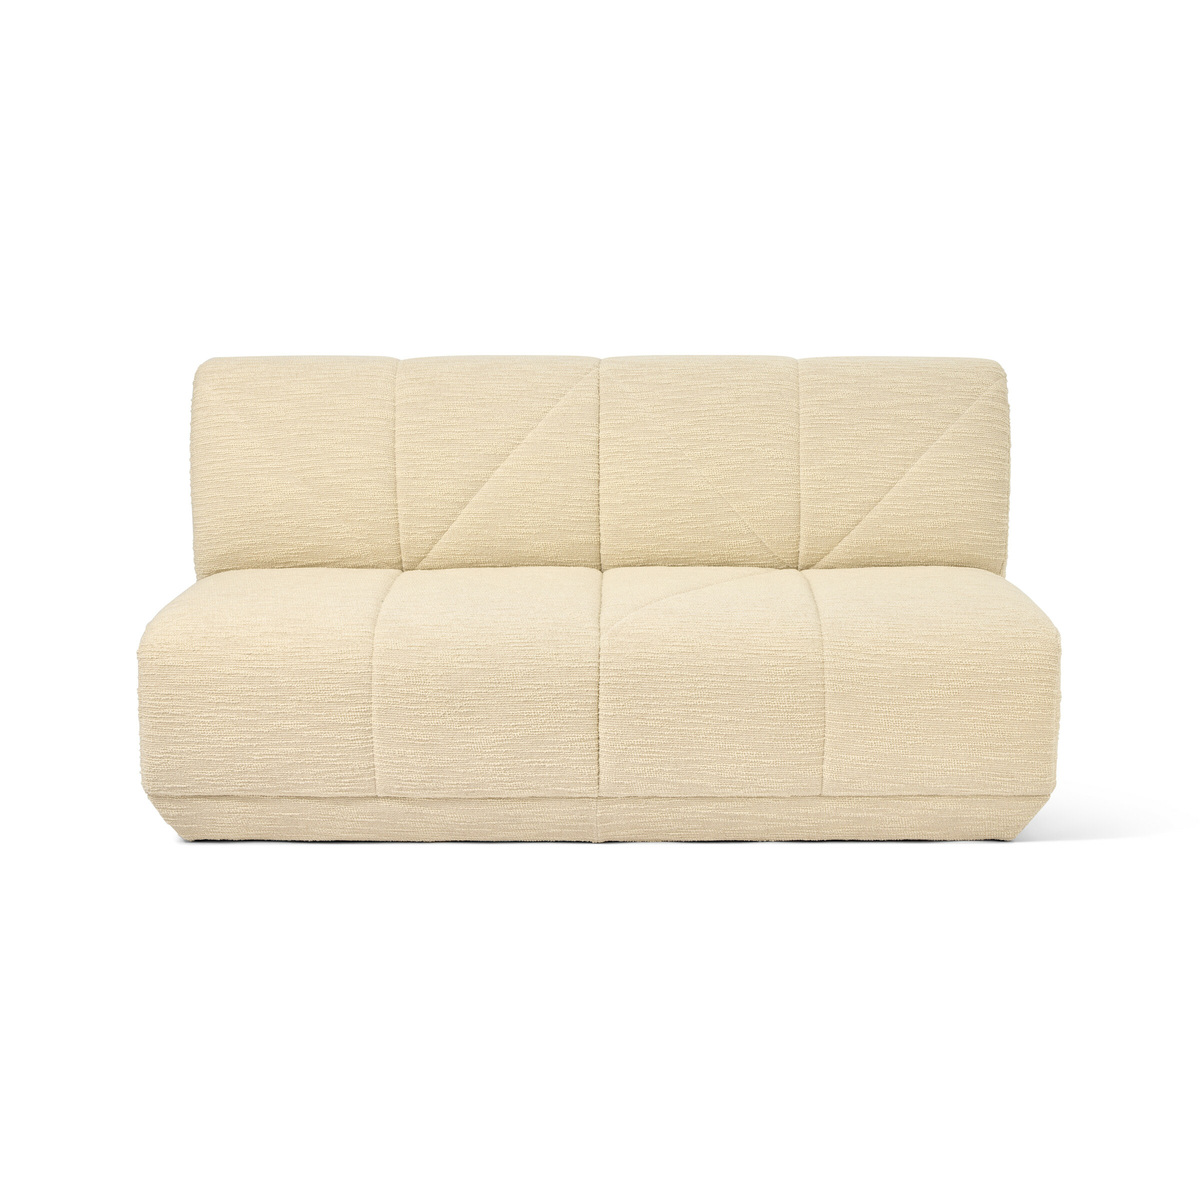 Chill Sofa, Off-White - L164 x H83 x P98 cm - image 1